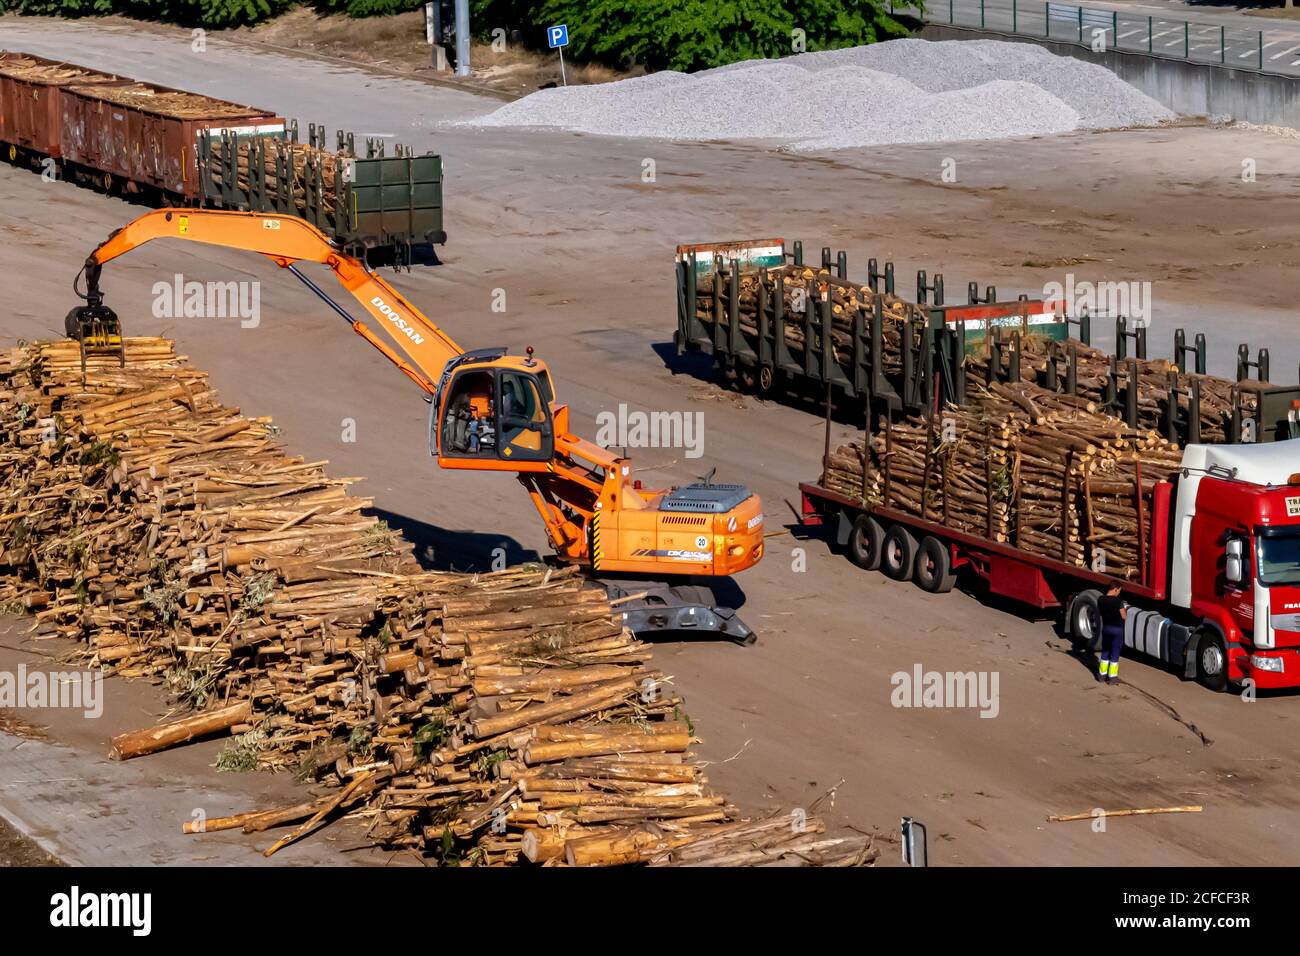 Transport des grumes de l'industrie du bois et du papier avec élévateur et camion. Travaux lourds collectant les journaux d'un camion. Banque D'Images